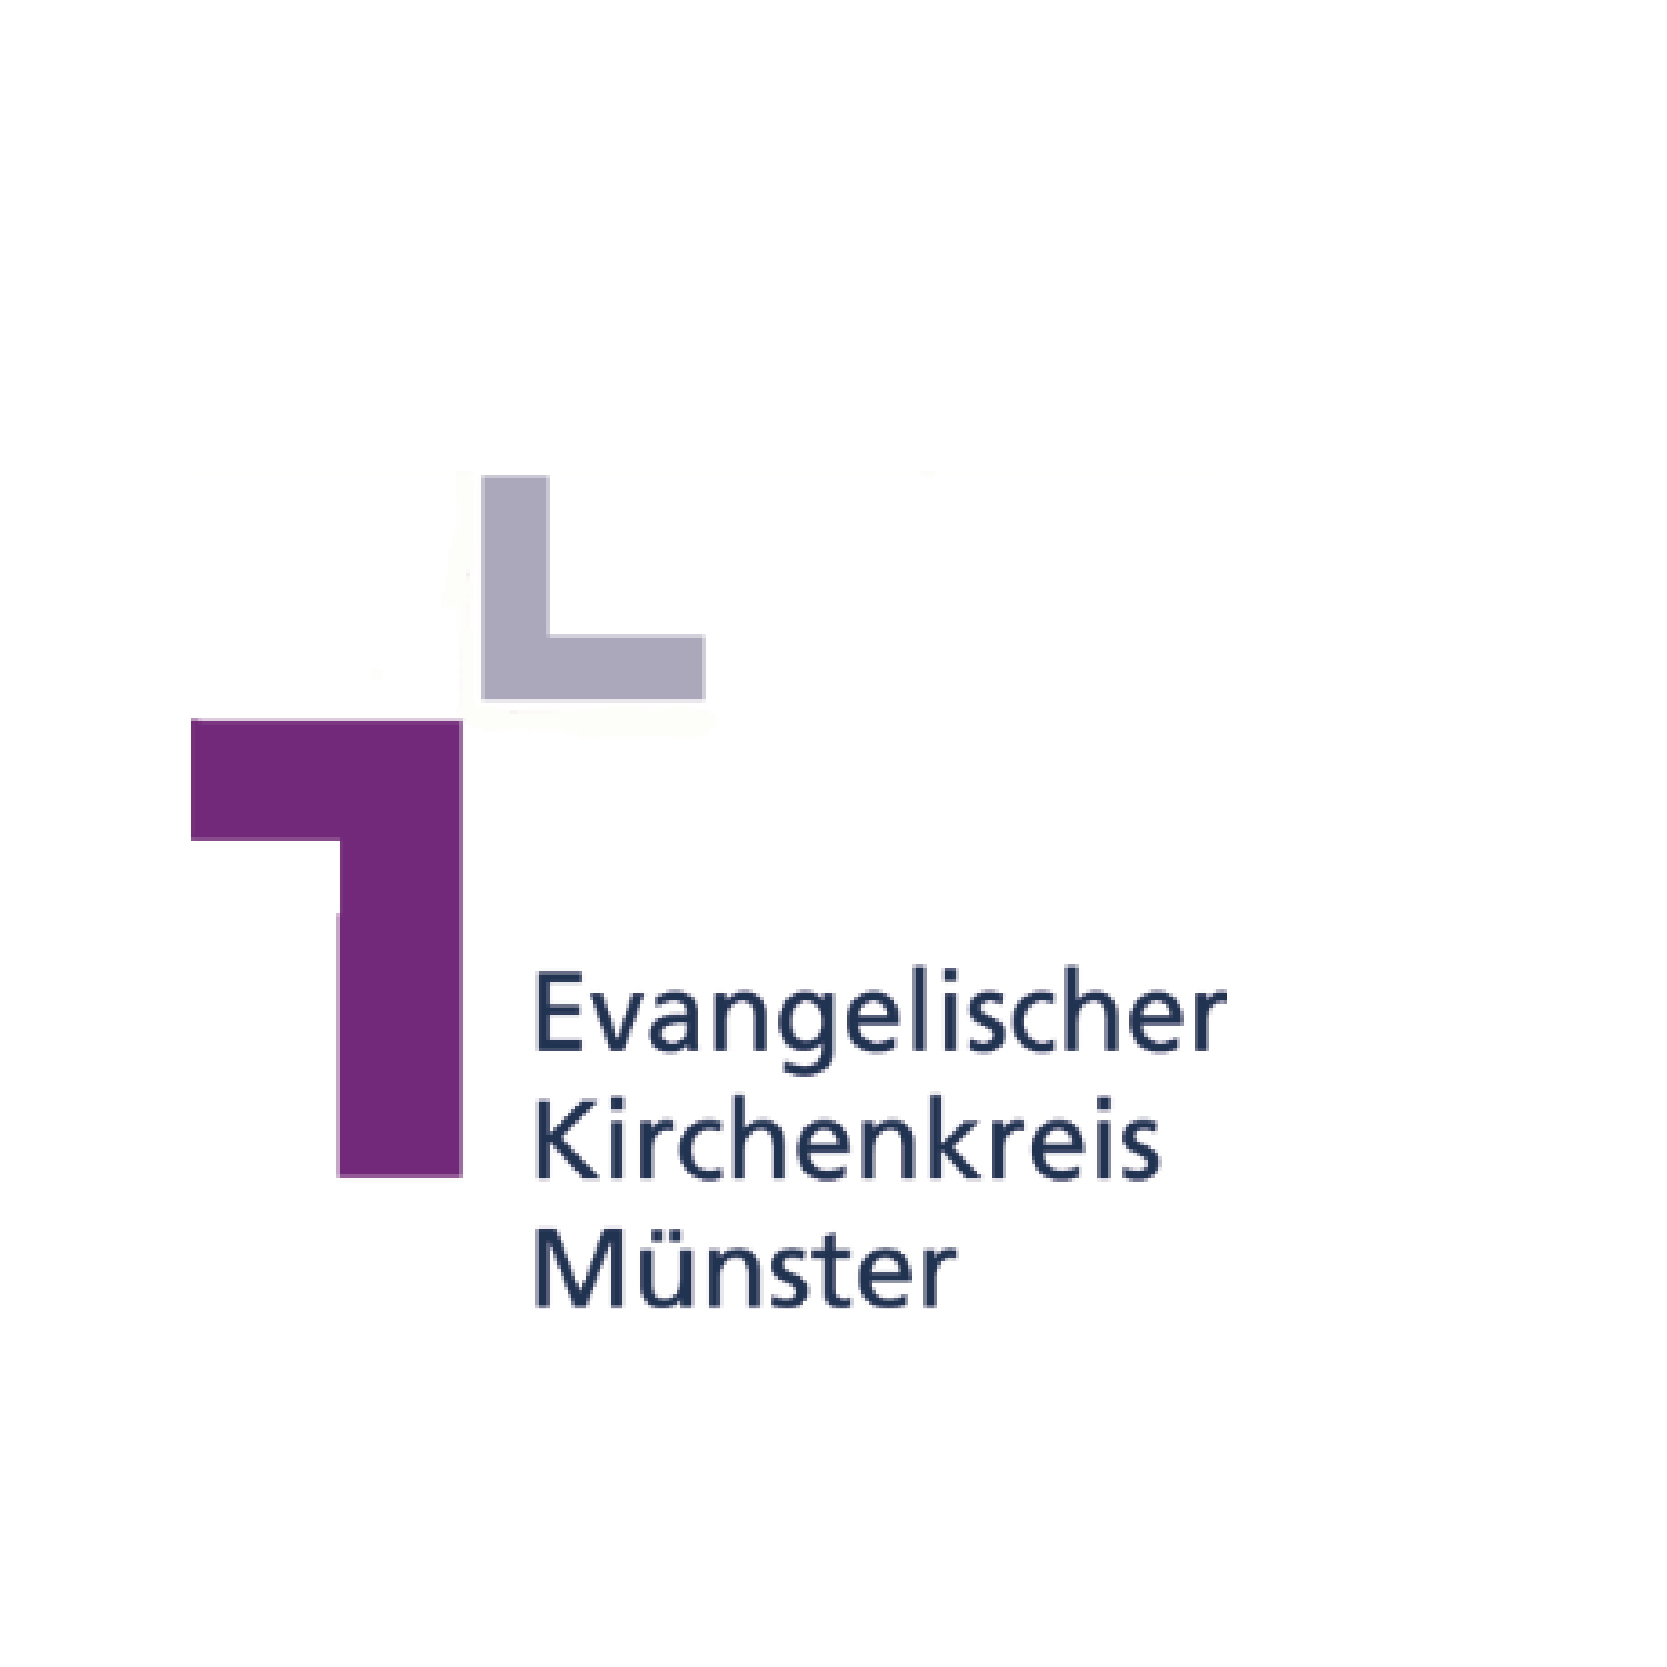 EVANGELISCHER-KIRCHENKREIS-MÜNSTER